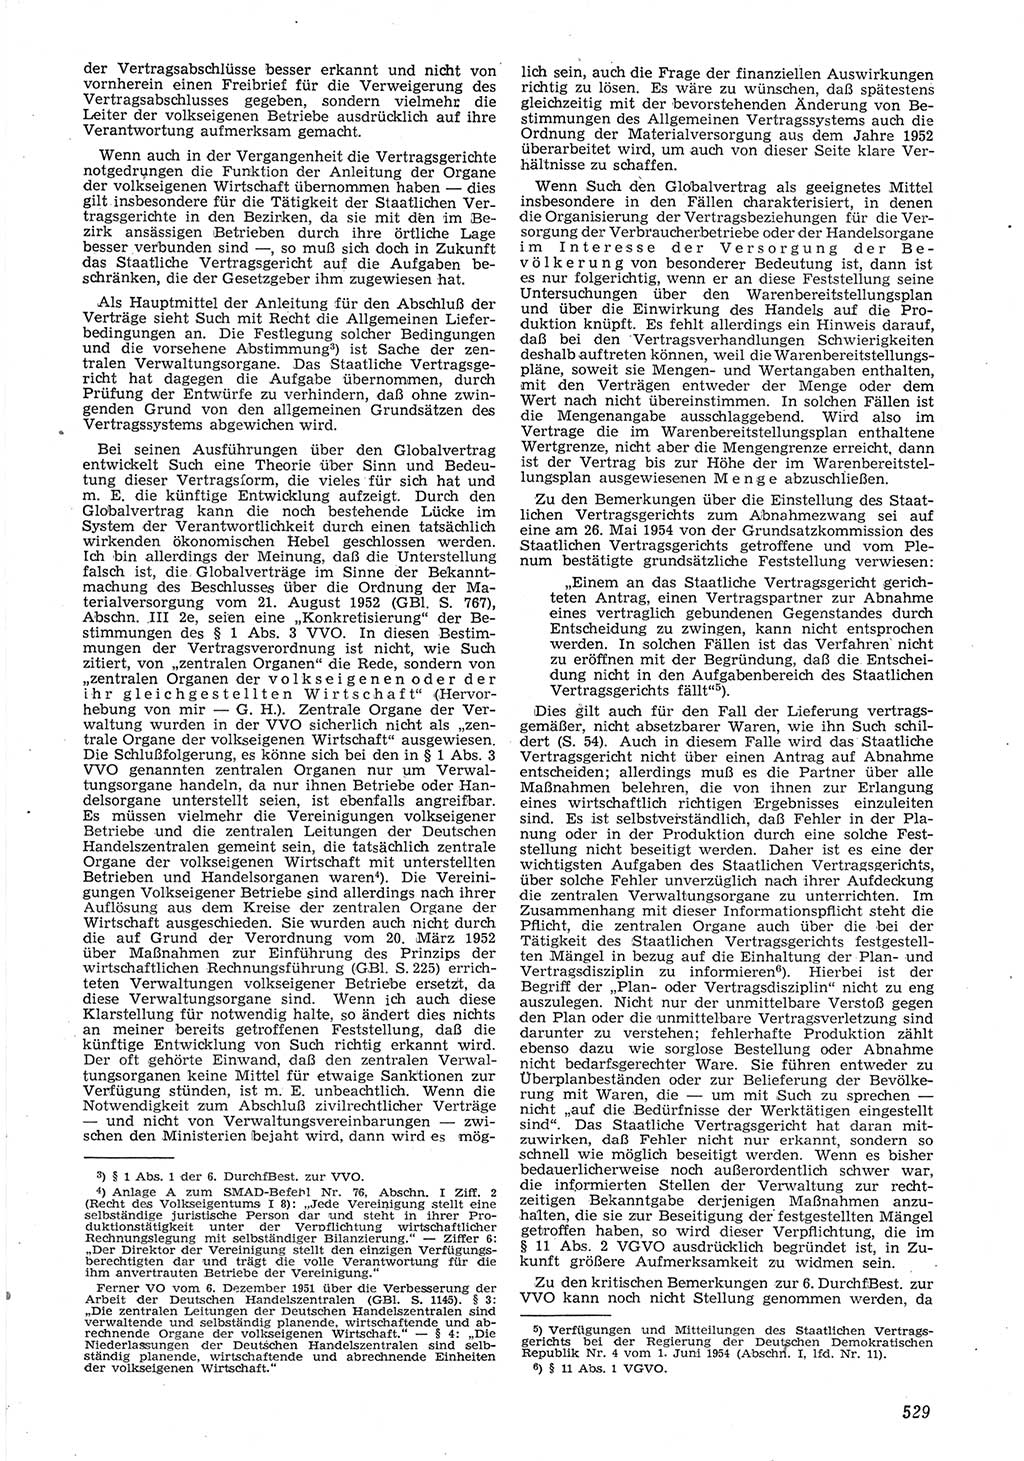 Neue Justiz (NJ), Zeitschrift für Recht und Rechtswissenschaft [Deutsche Demokratische Republik (DDR)], 8. Jahrgang 1954, Seite 529 (NJ DDR 1954, S. 529)